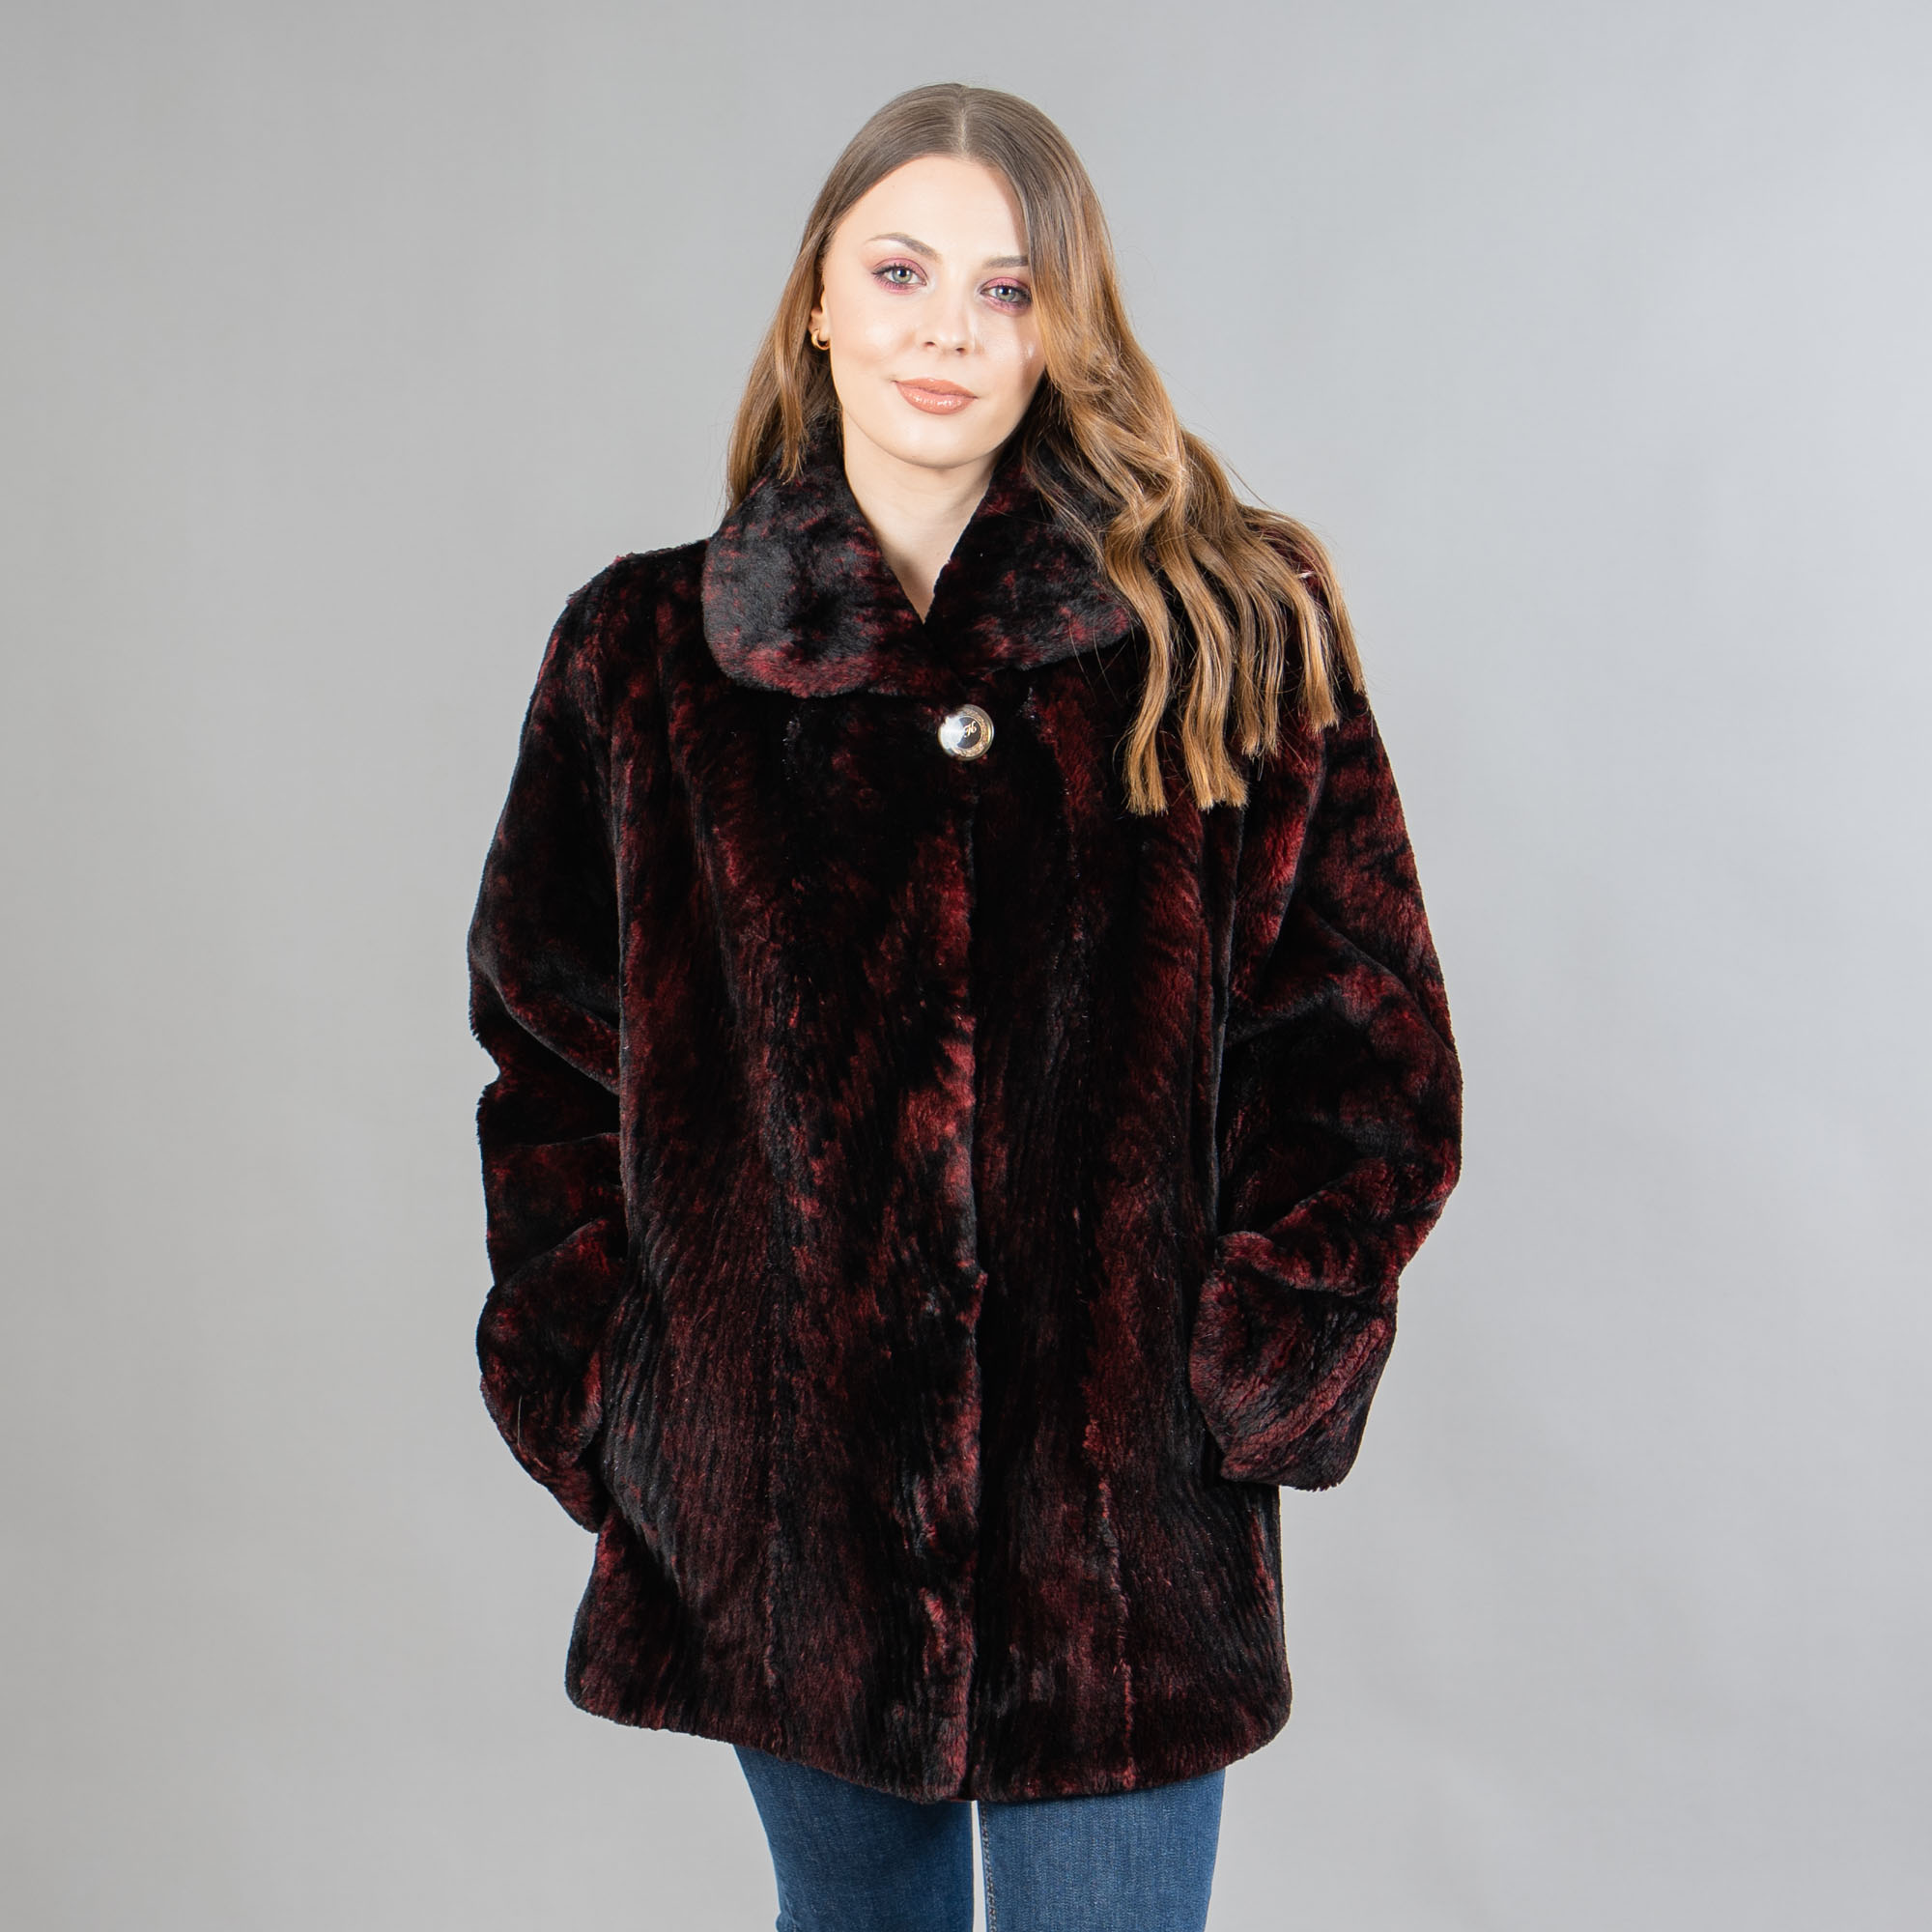 γούνινο σακάκι κάστορα σε μαύρο-κόκκινο χρώμα